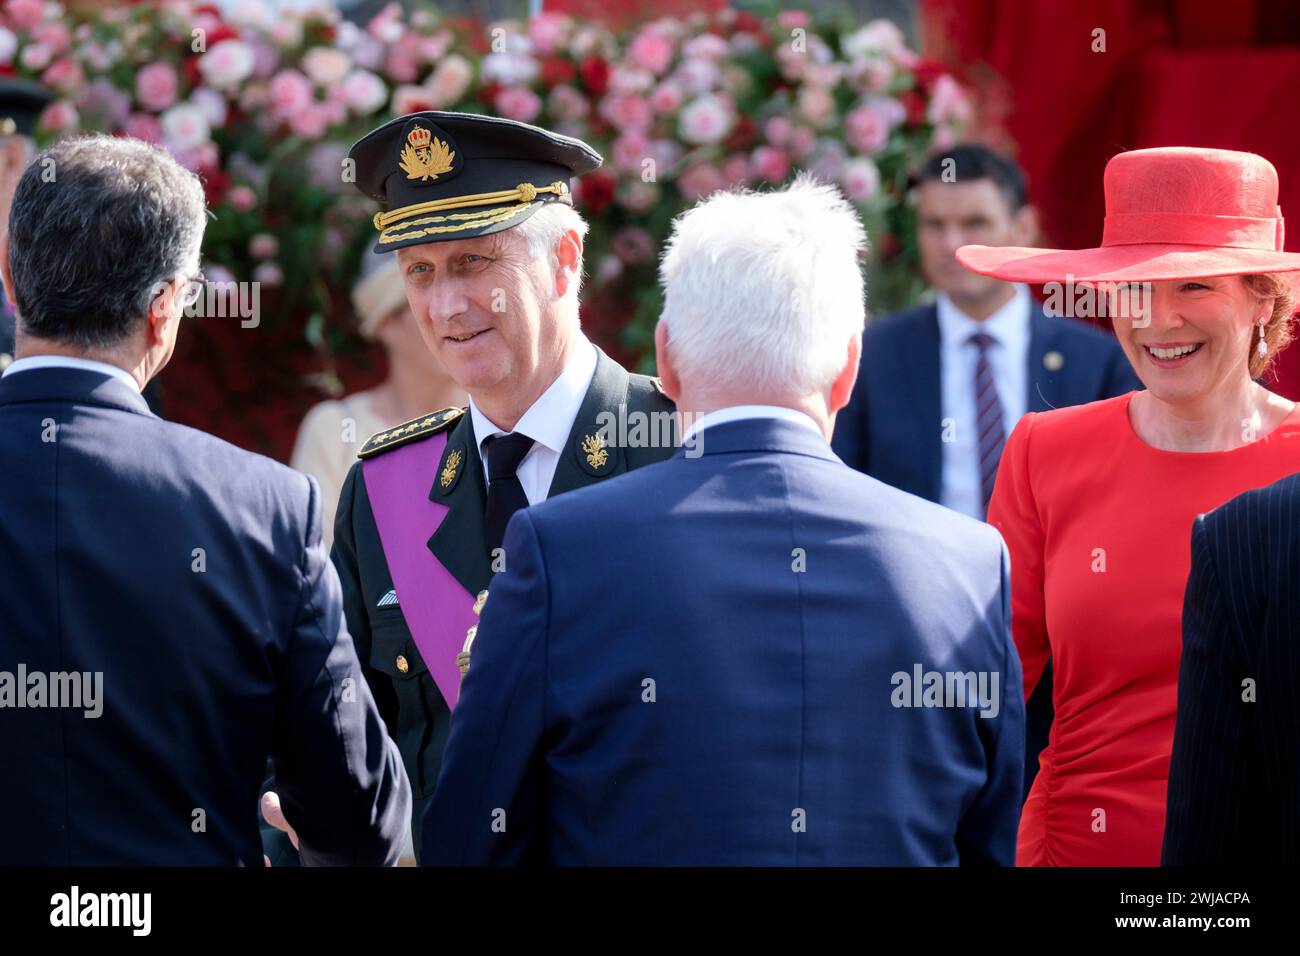 Belgique, Bruxelles : la famille royale belge à l'occasion de la fête nationale du 21 juillet 2023. La reine Mathilde de Belgique et le roi Philippe de B. Banque D'Images